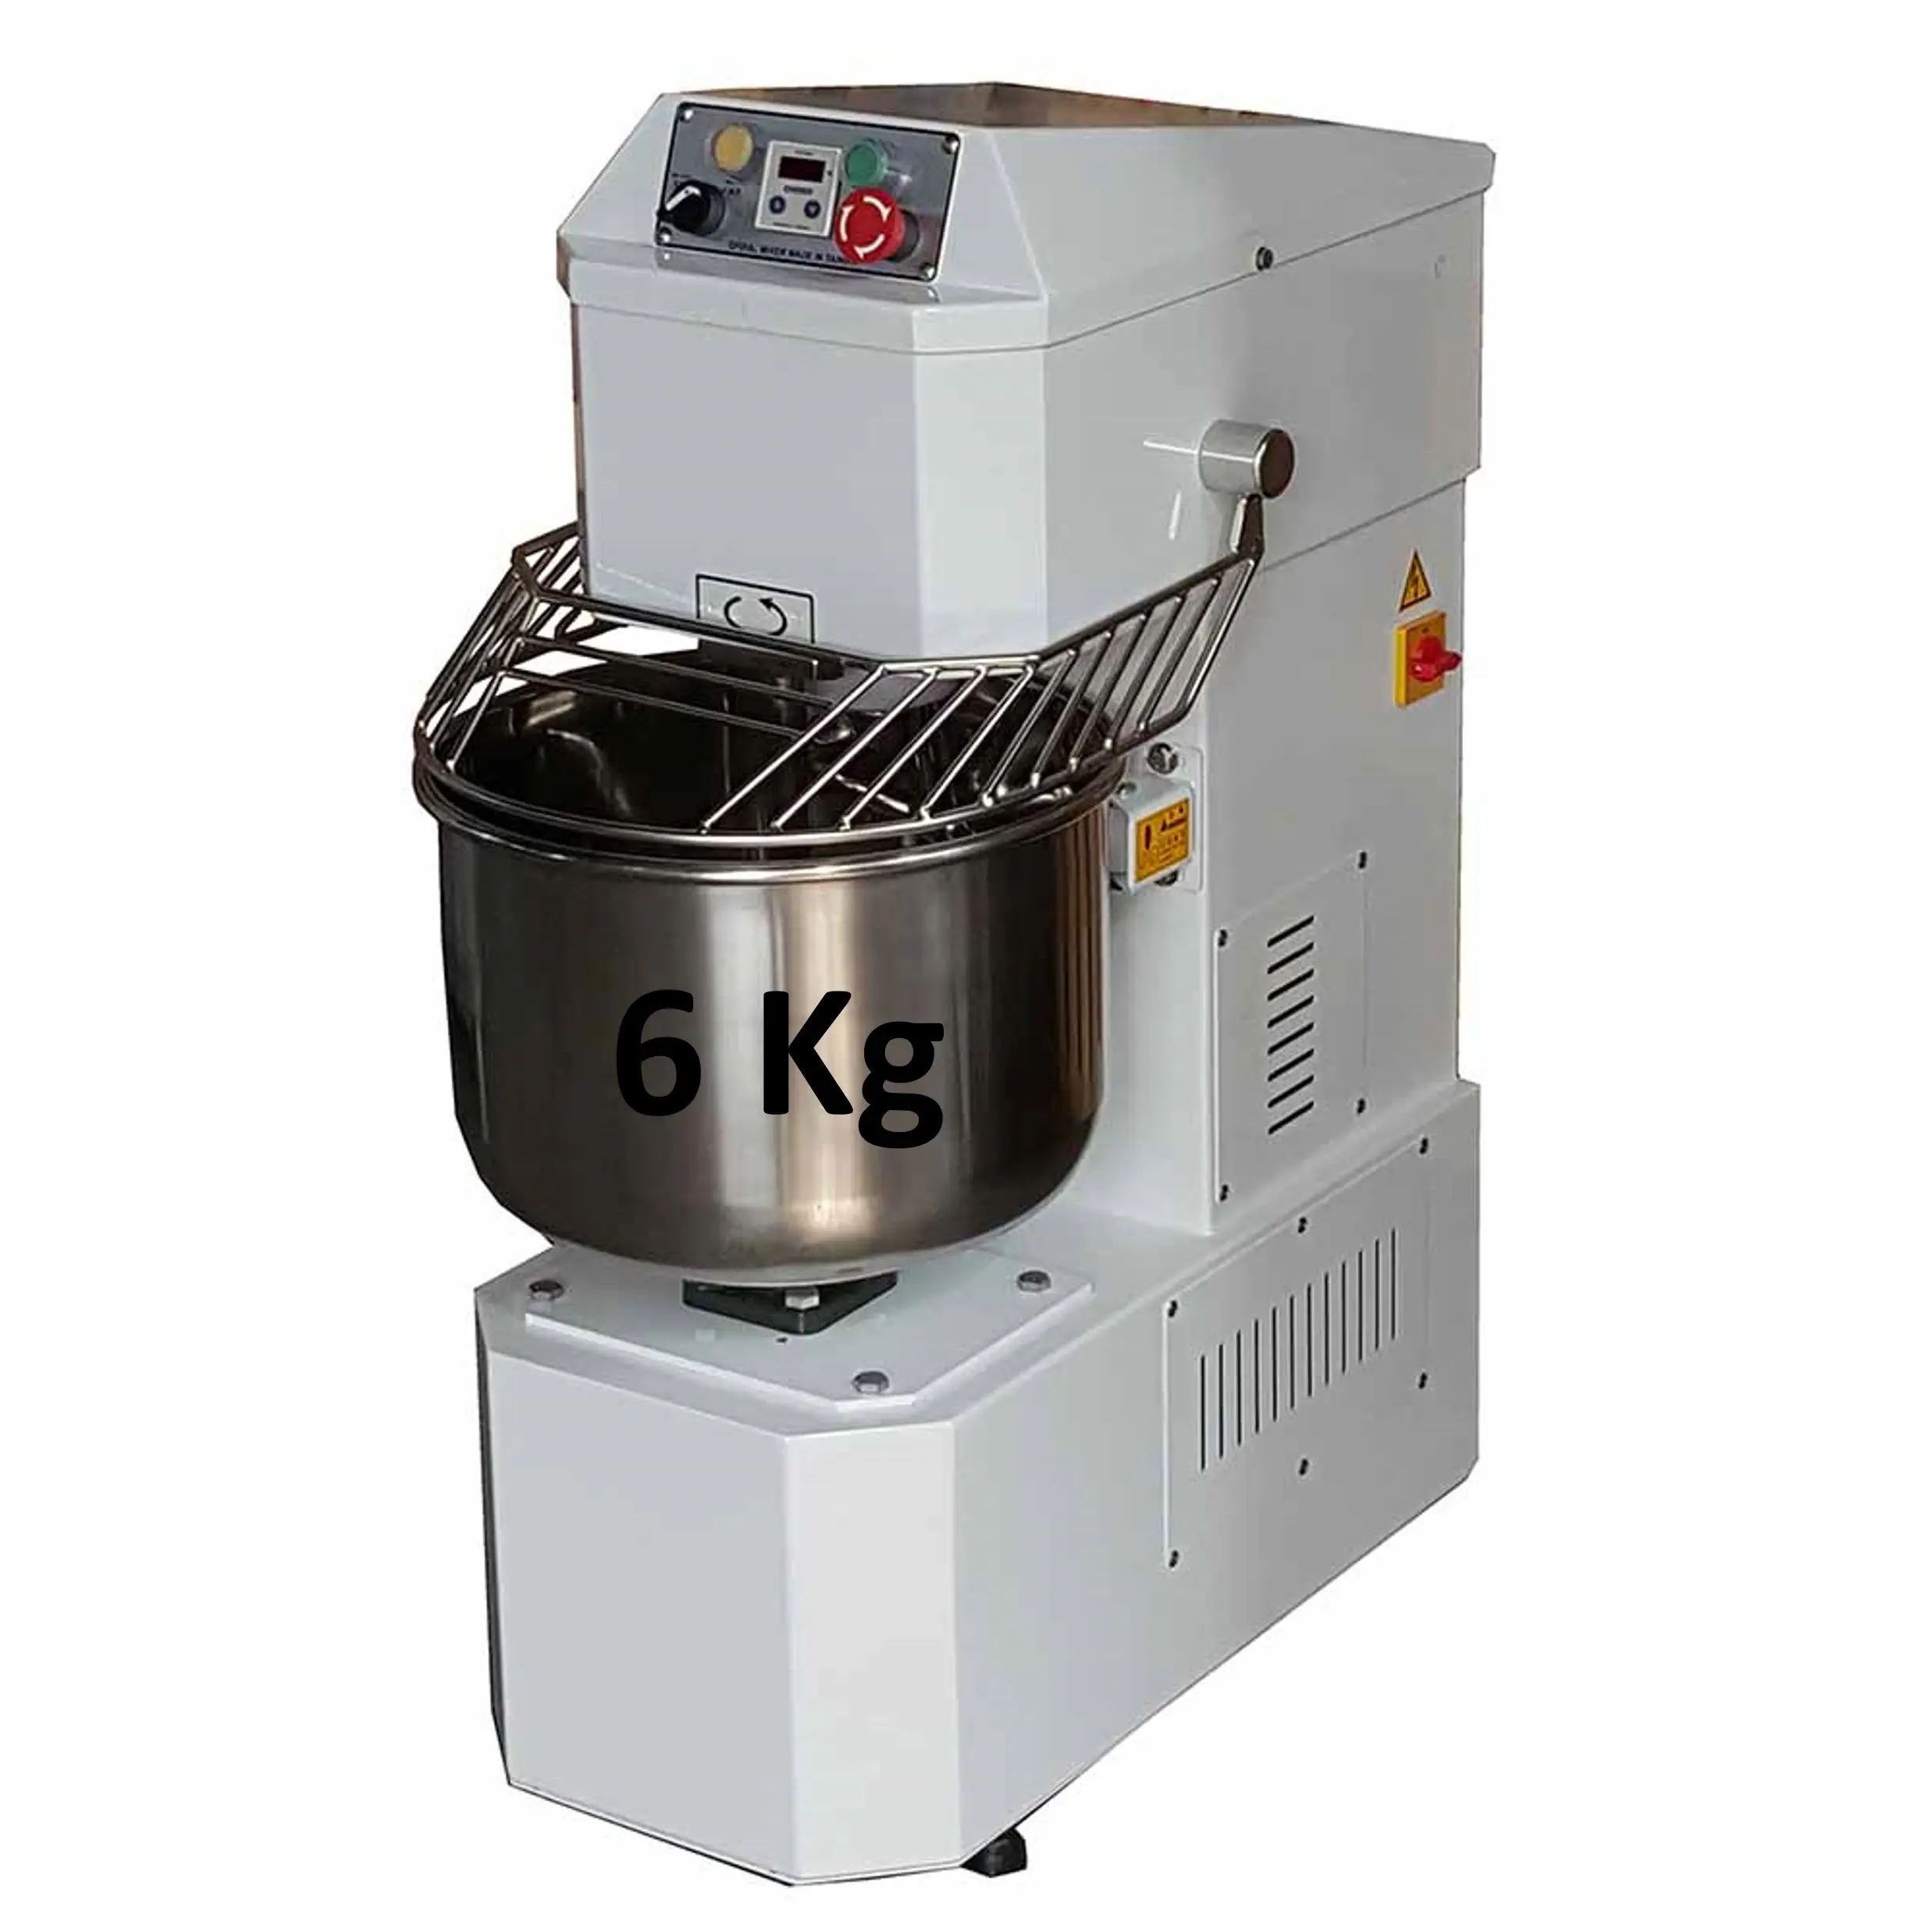 6 Kg Spiral Dough Mixer Bakery Machine Bread Maker Flour Kneader Machine Baking Equipment Pizza Mixer